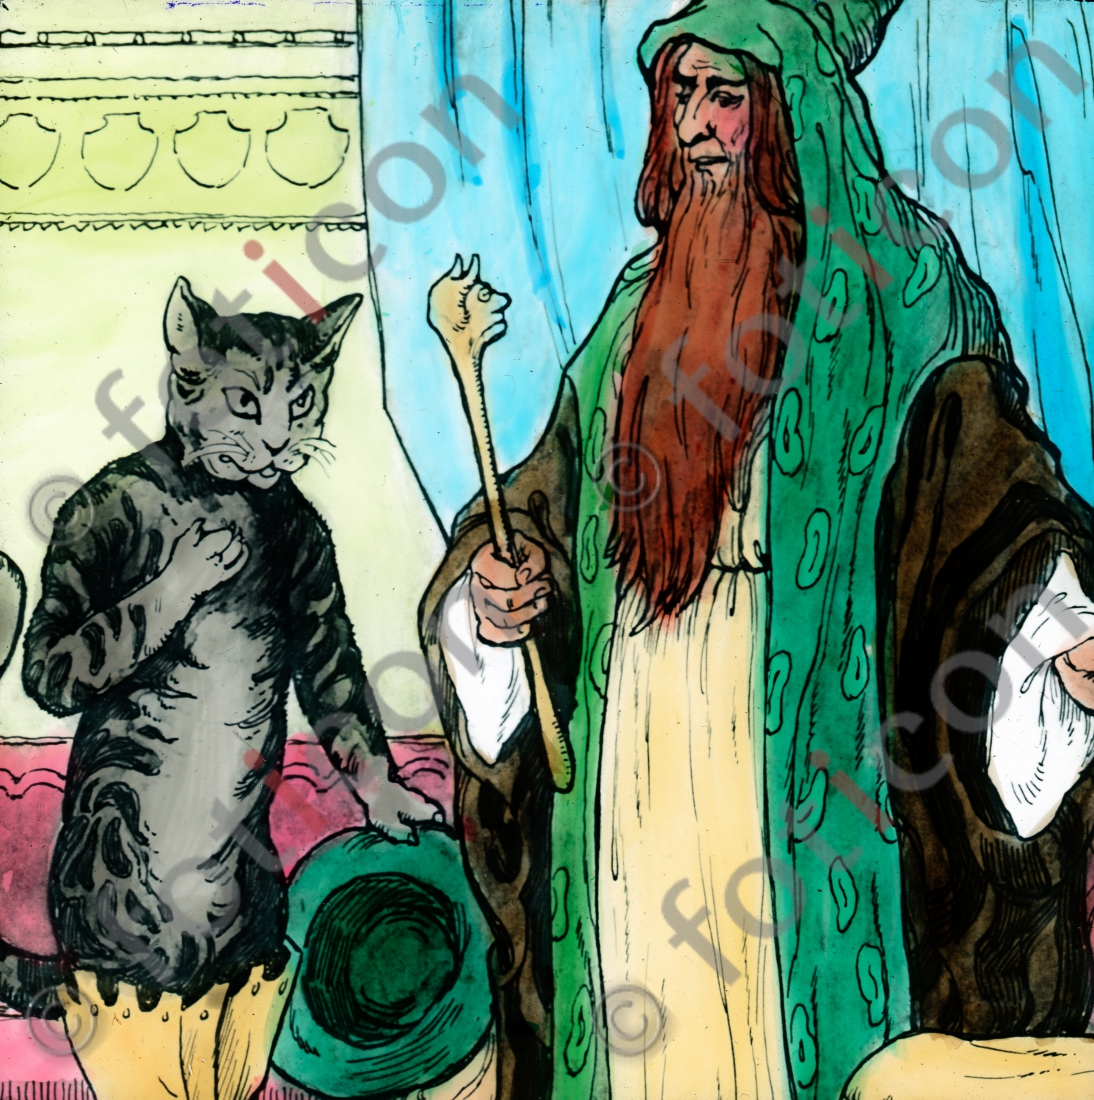 Der Kater spricht mit dem Zauberer | The cat speaks with the magician  - Foto foticon-simon-166b-008.jpg | foticon.de - Bilddatenbank für Motive aus Geschichte und Kultur